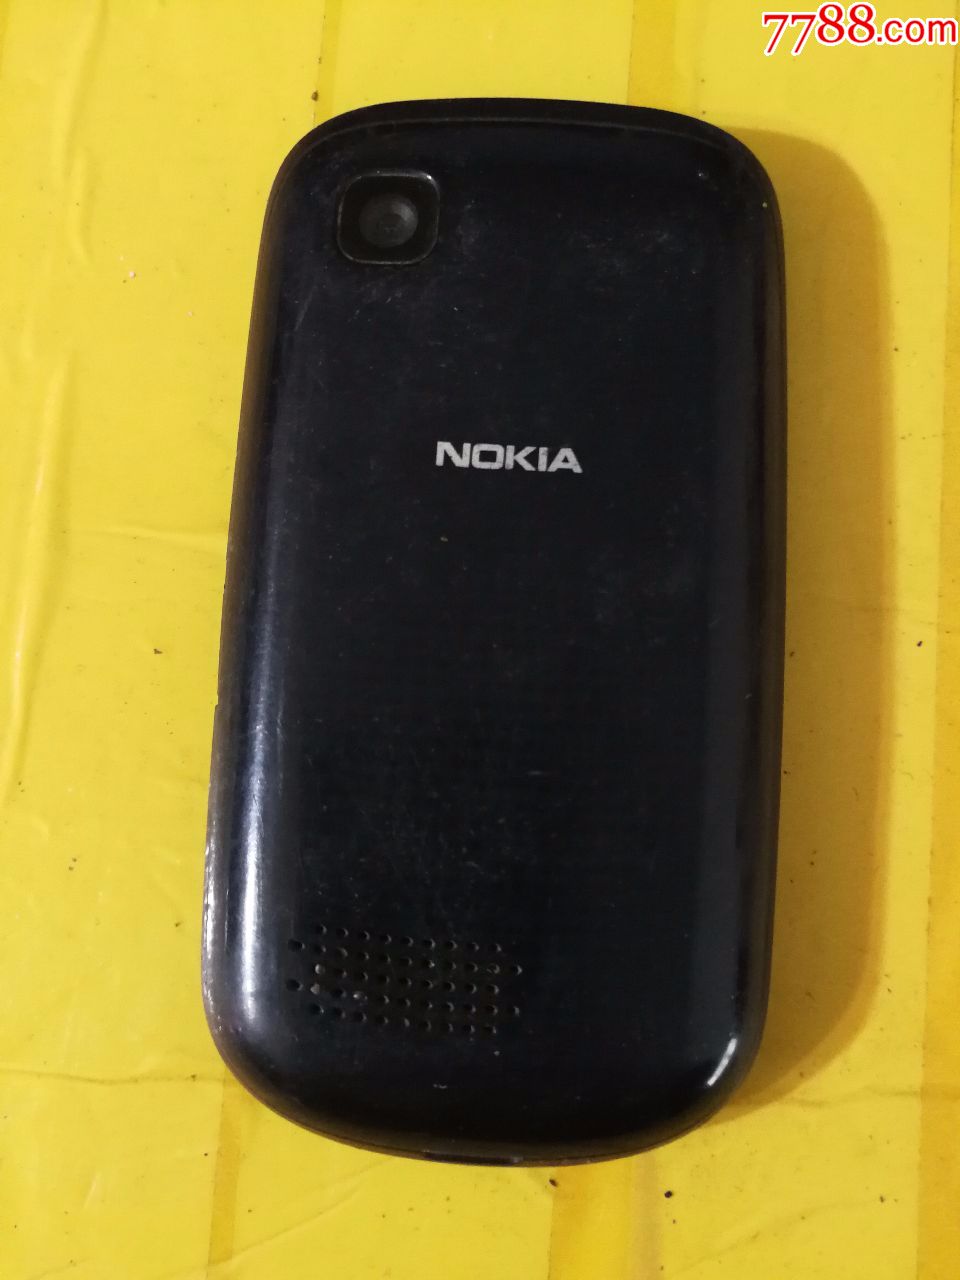 诺基亚手机ce0168